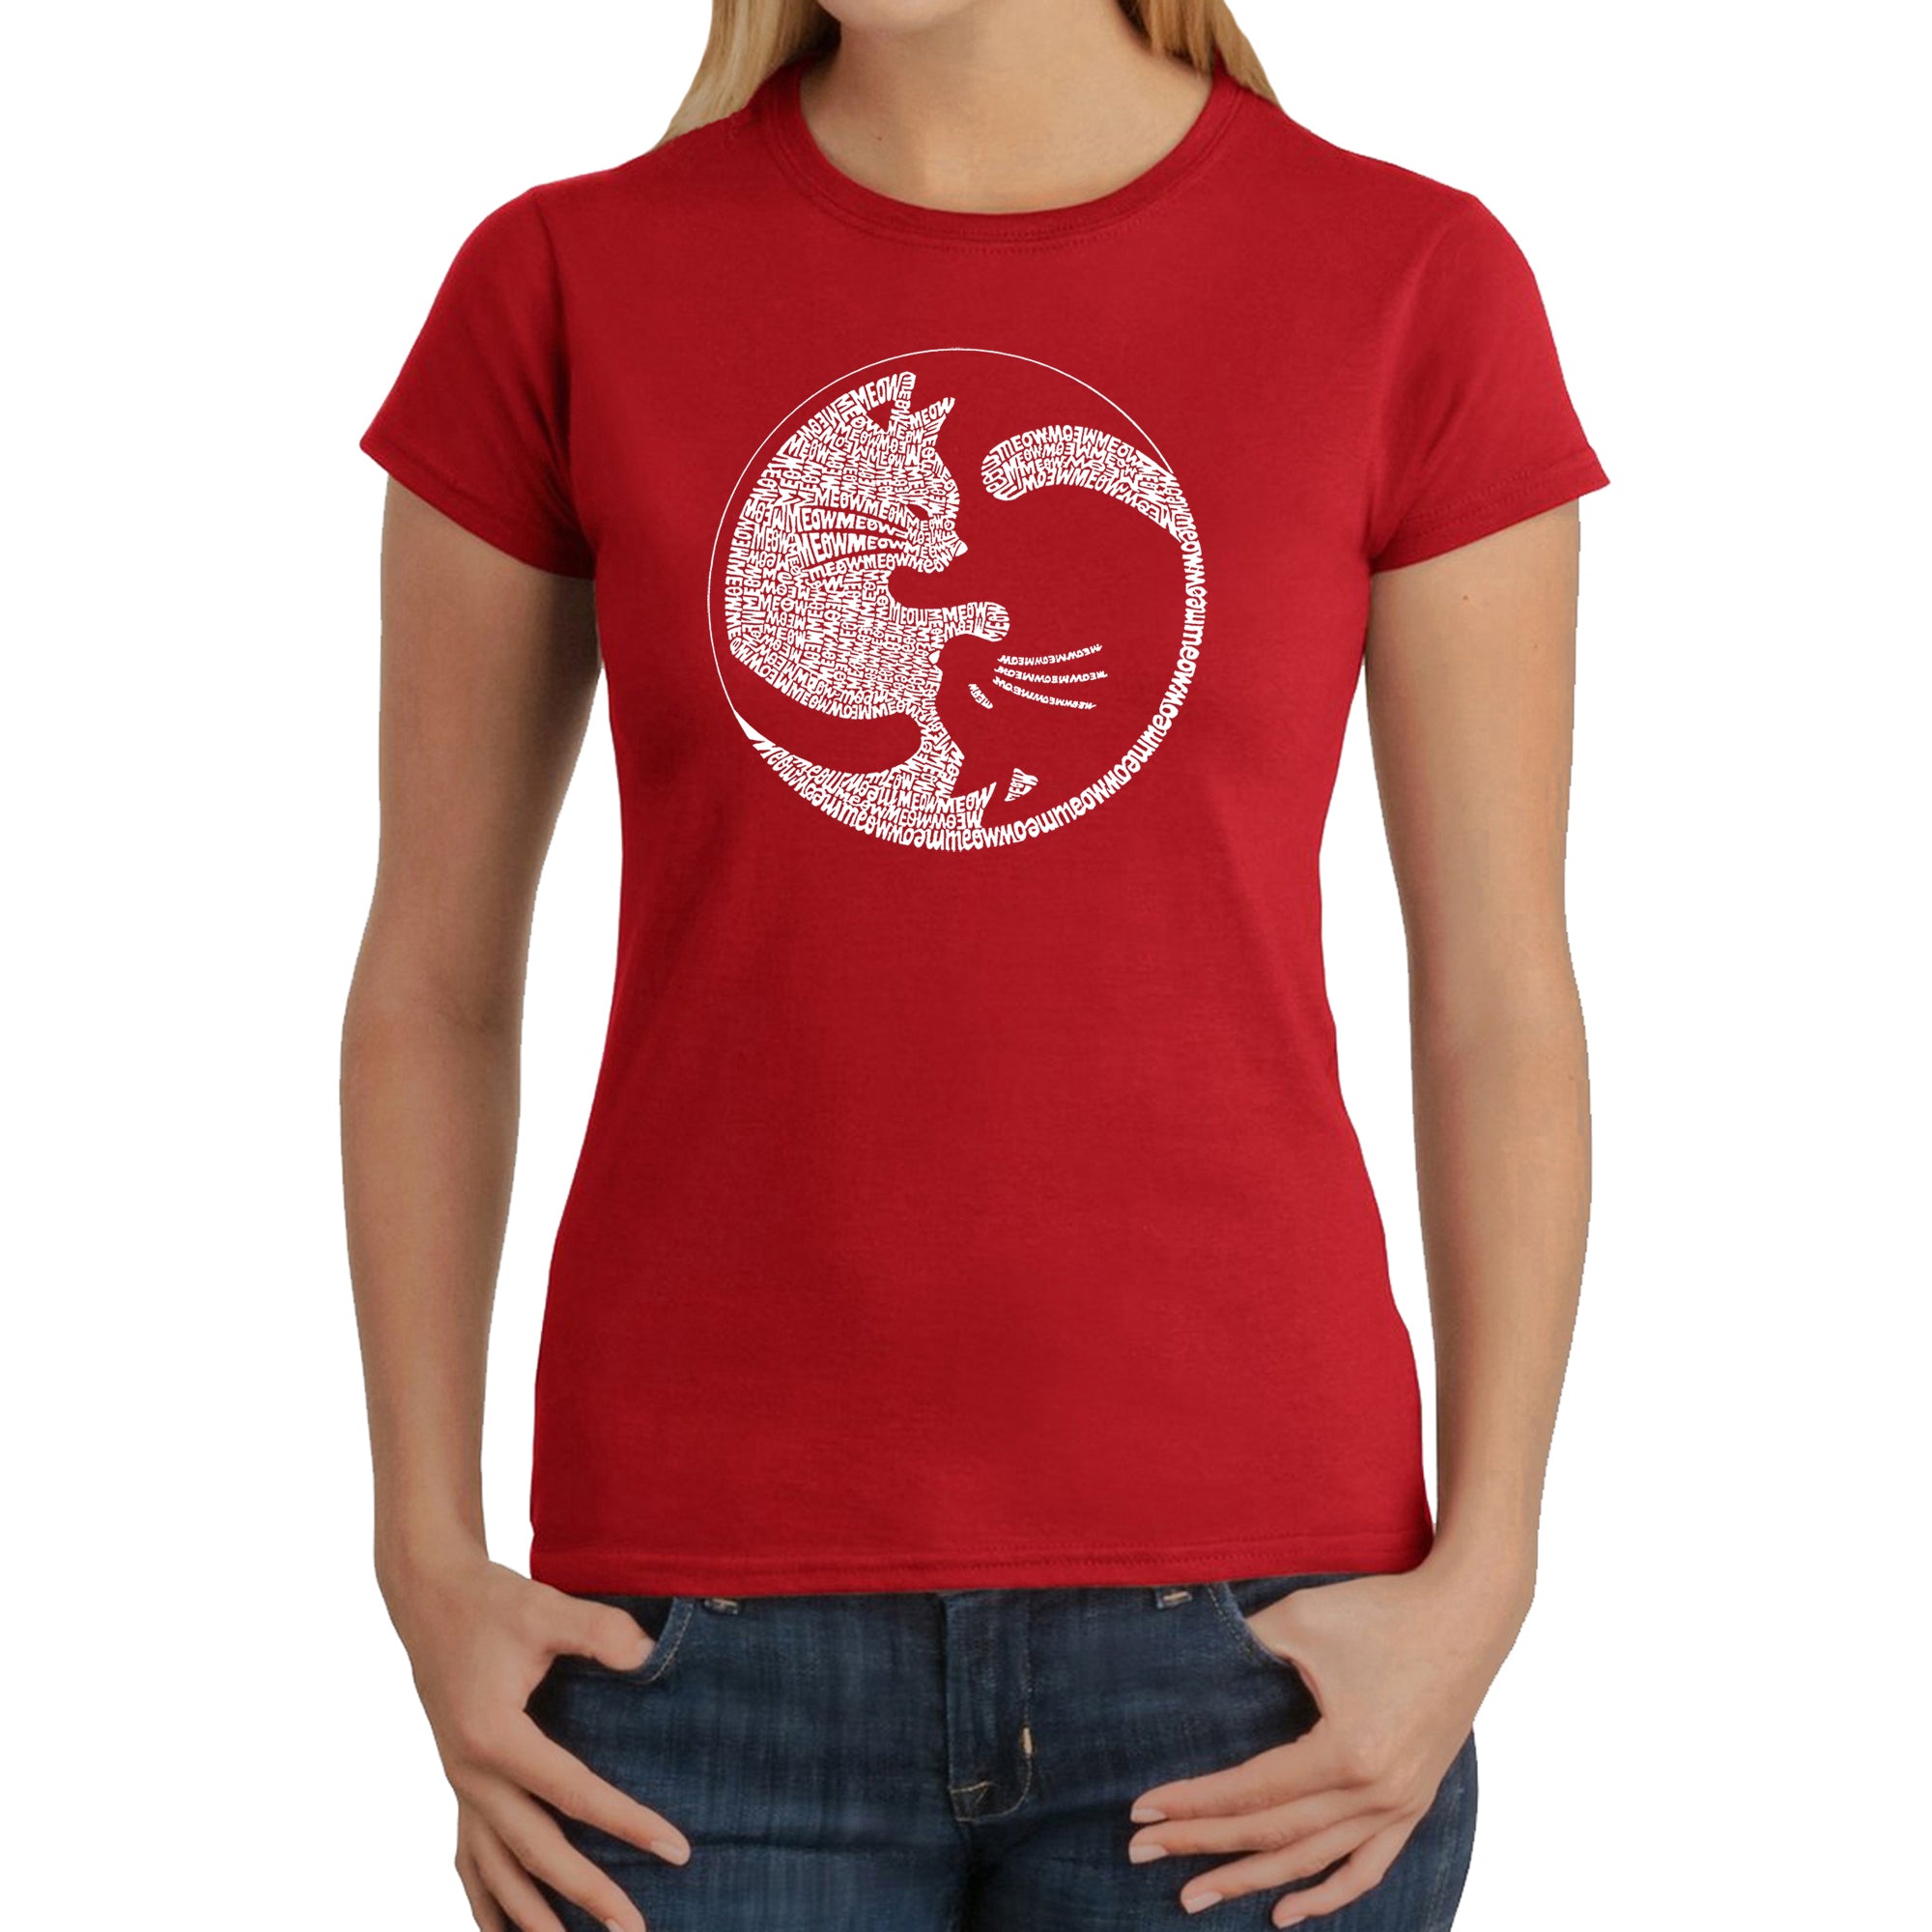 Yin Yang Cat - Women's Word Art T-Shirt - Red - XX-Large